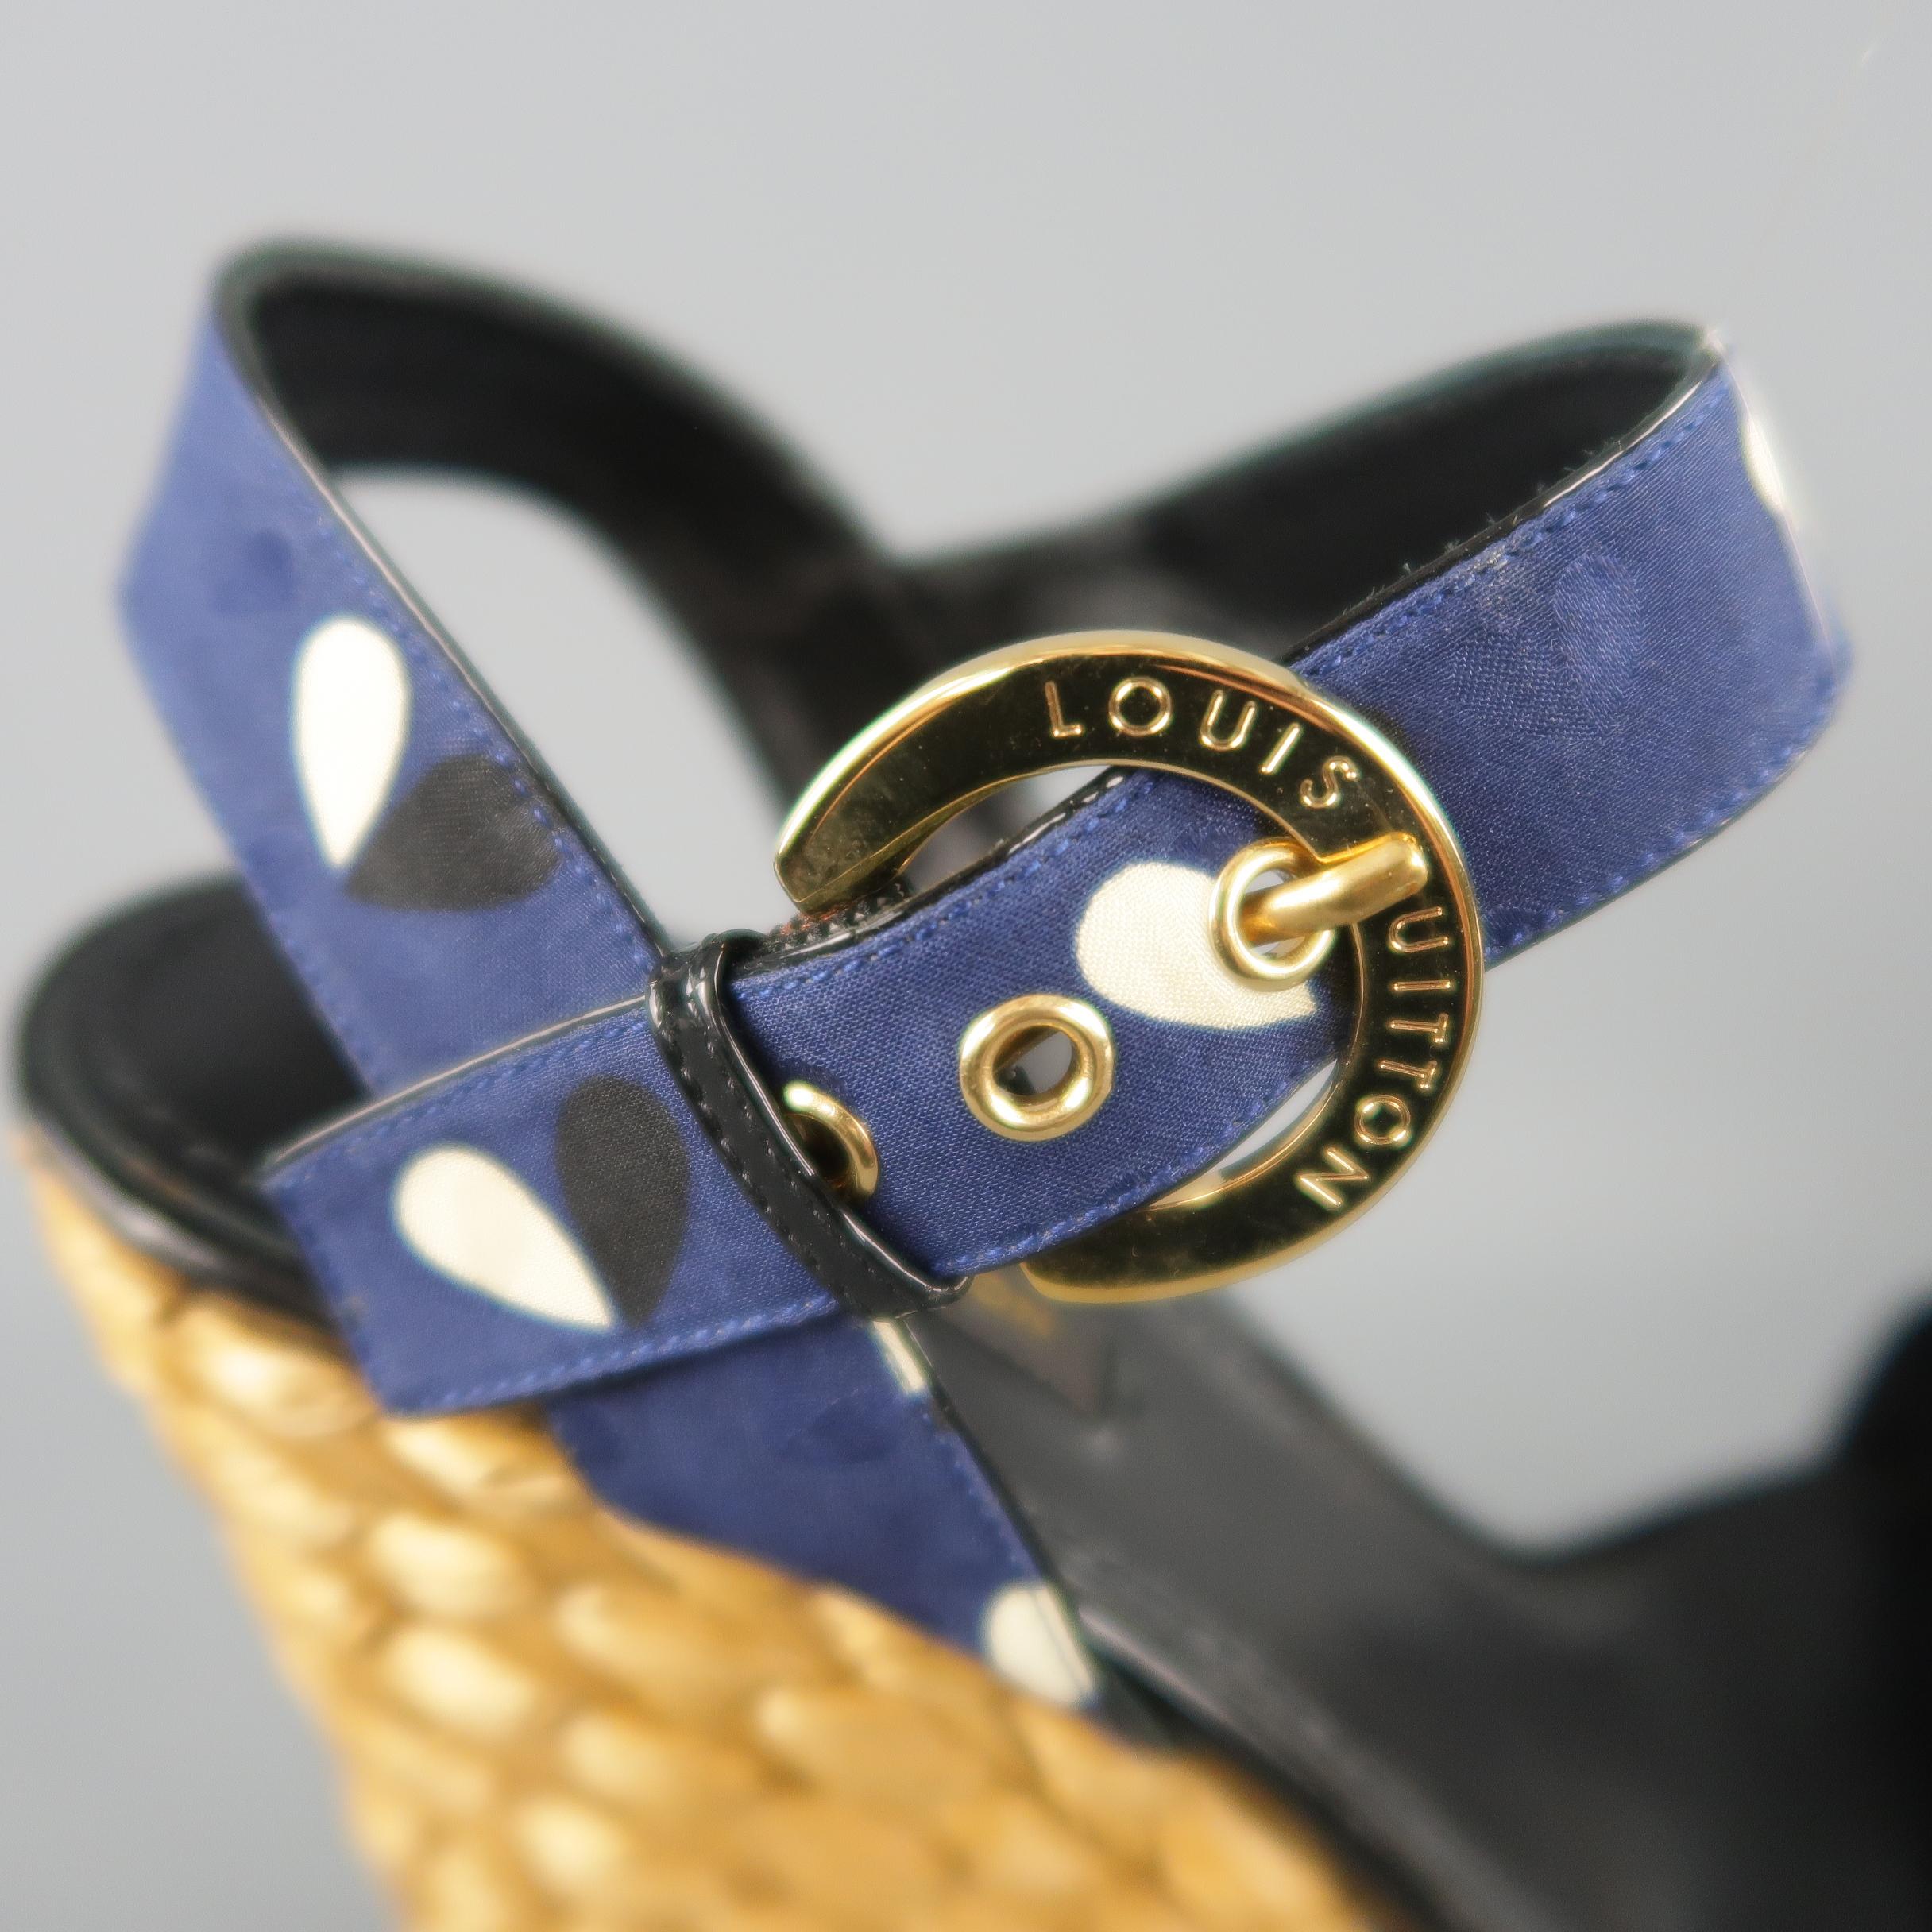 Women's LOUIS VUITTON Size 7 Navy Fabric Braided Espadrille Platform Wedge Sandals